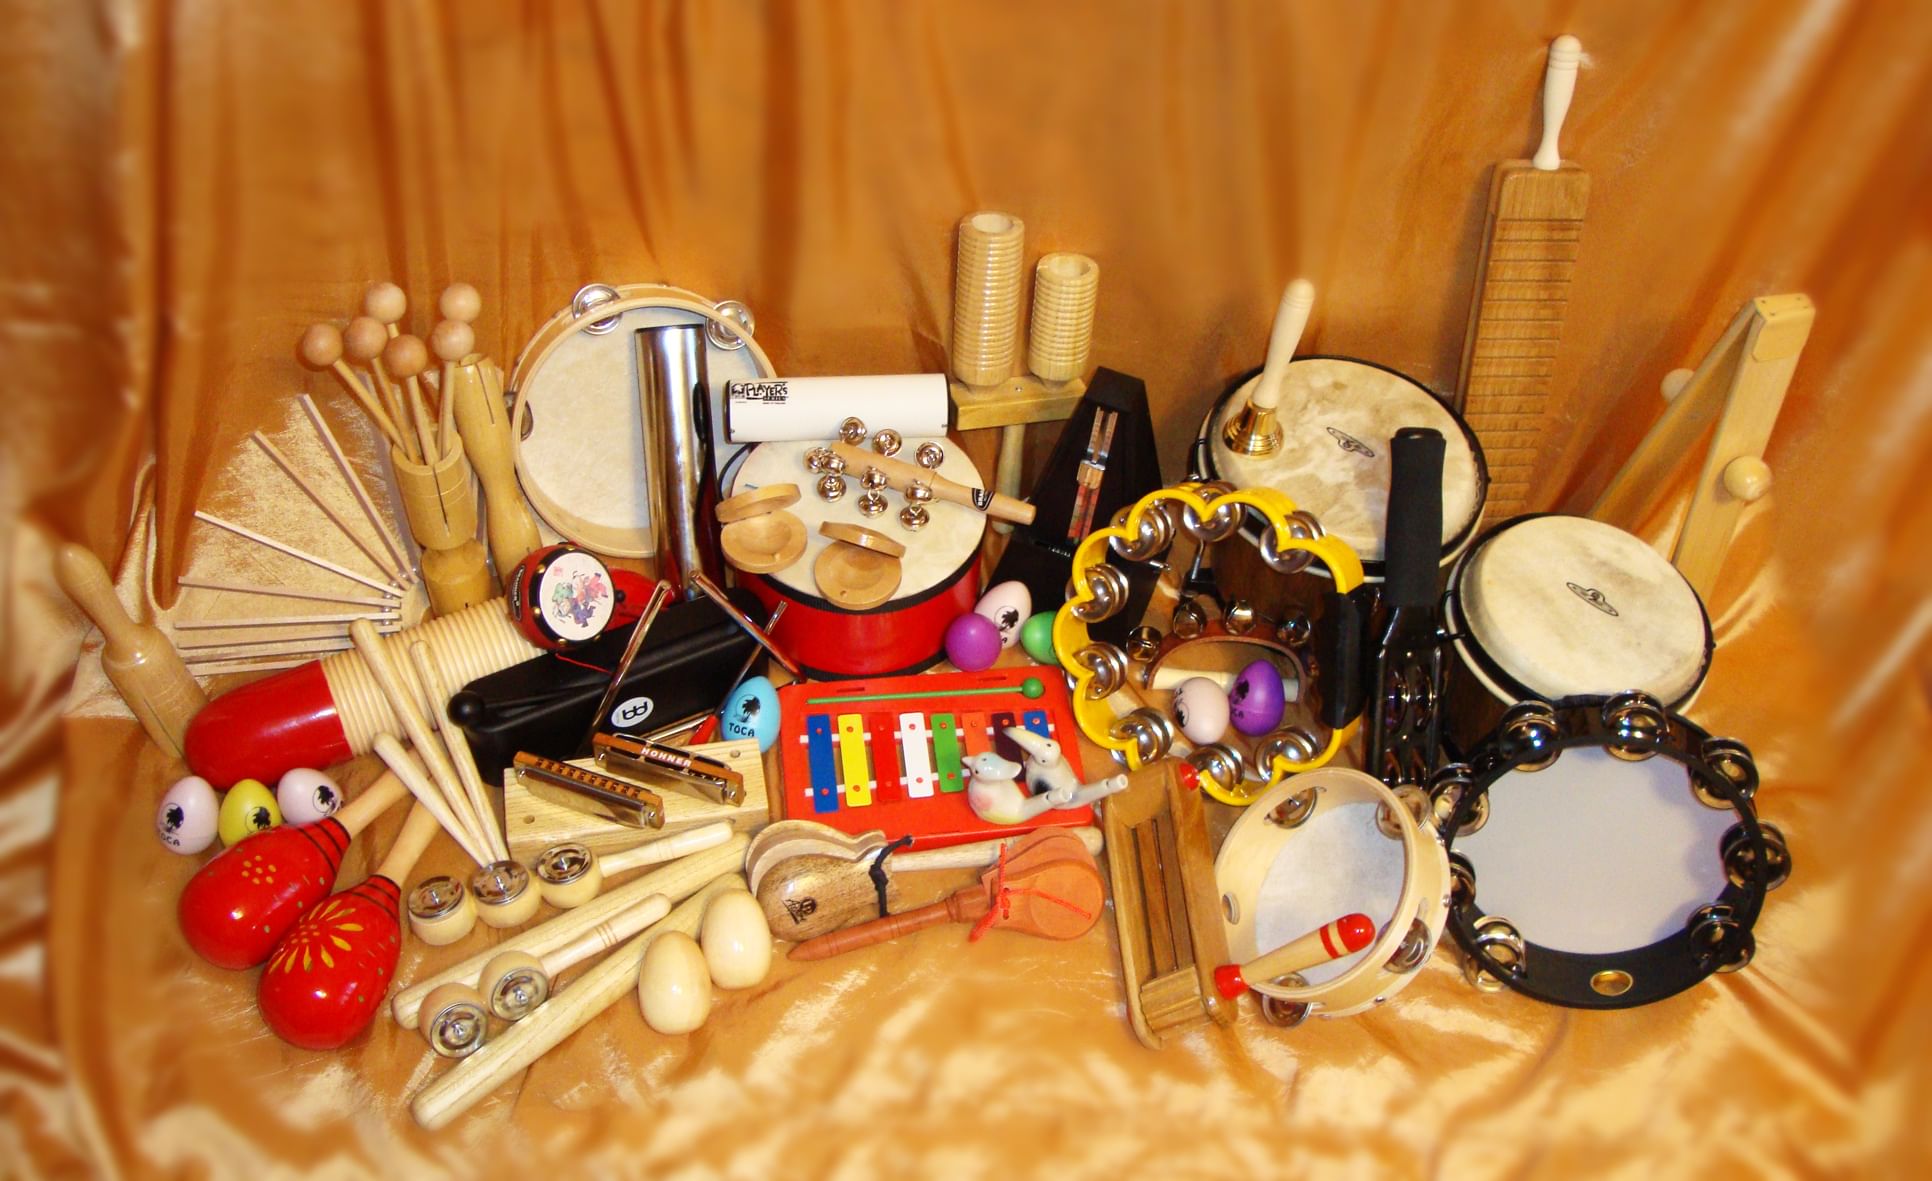 Купить детские музыкальные инструменты на доске объявлений в Израиле.